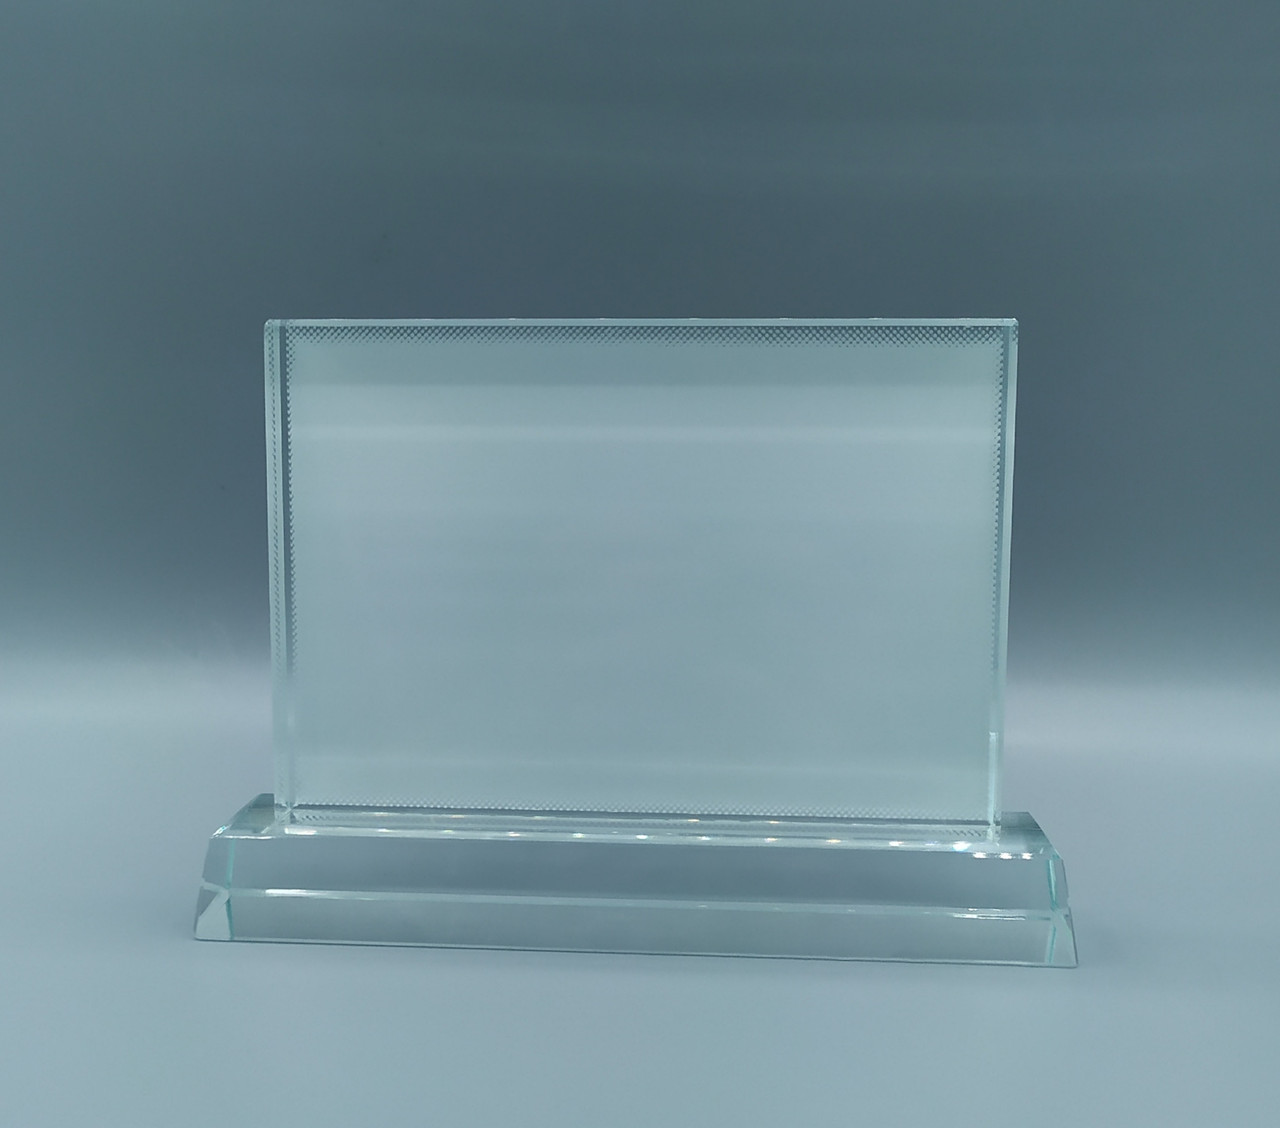 Фотокристалл для сублимации (BSJ 08b),размер - 130х110х15мм